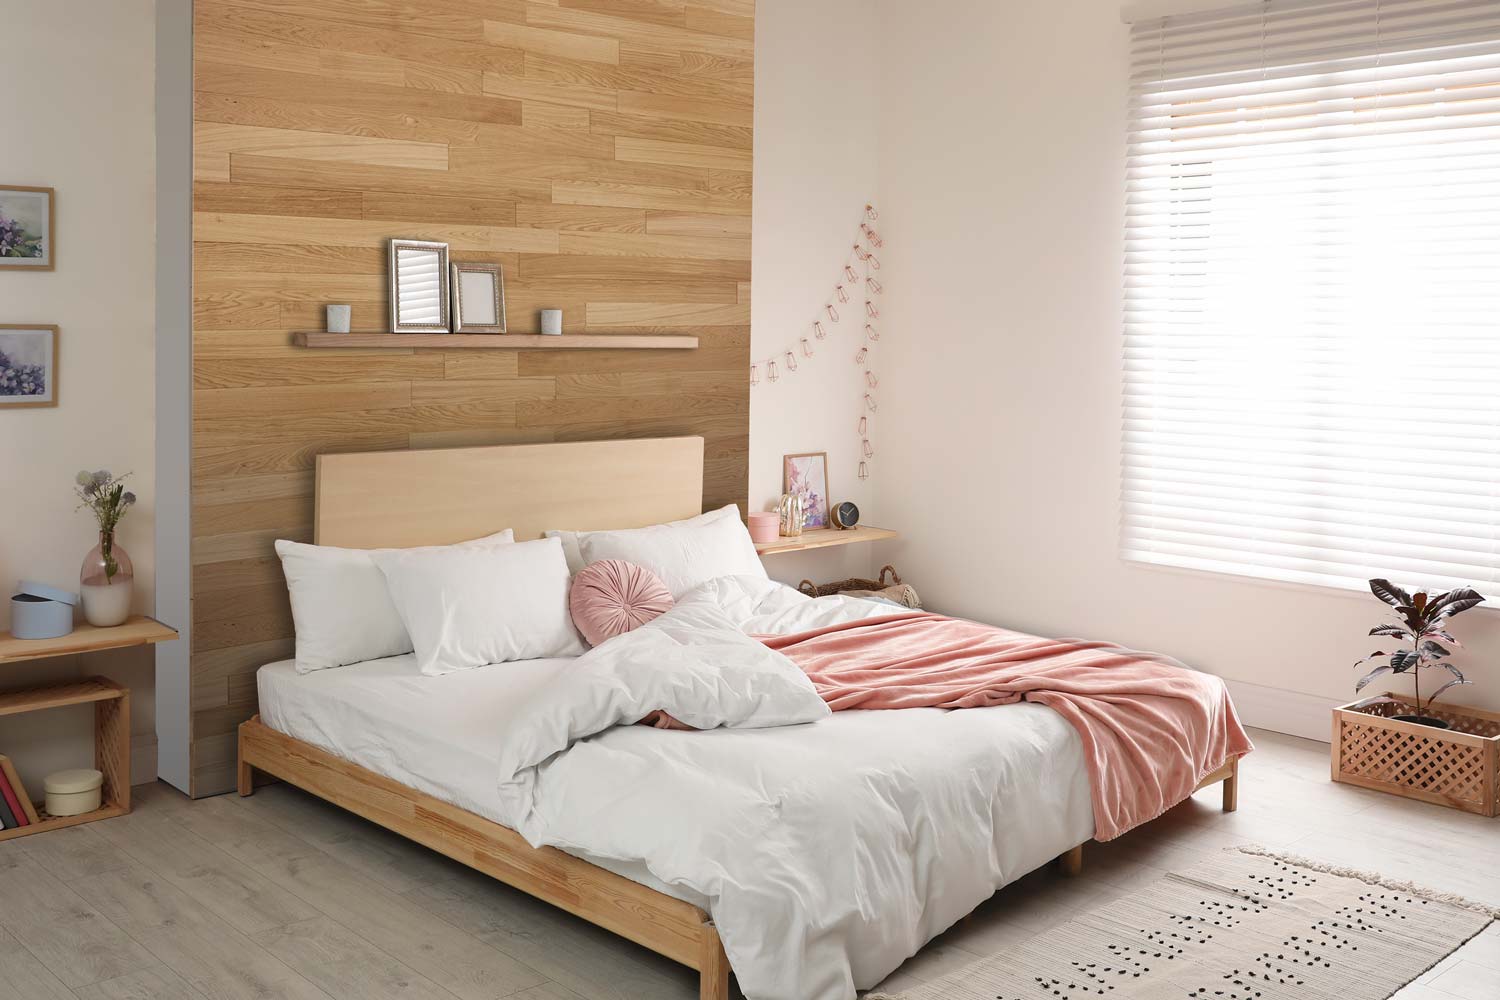 wodewa Holz-Wandverkleidung, EICHE exquisit, gebürstet geölt, zum Verkleben - Moderne Wanddekoration für Wohnzimmer, Küche, Bad, Schlafzimmer und Flur